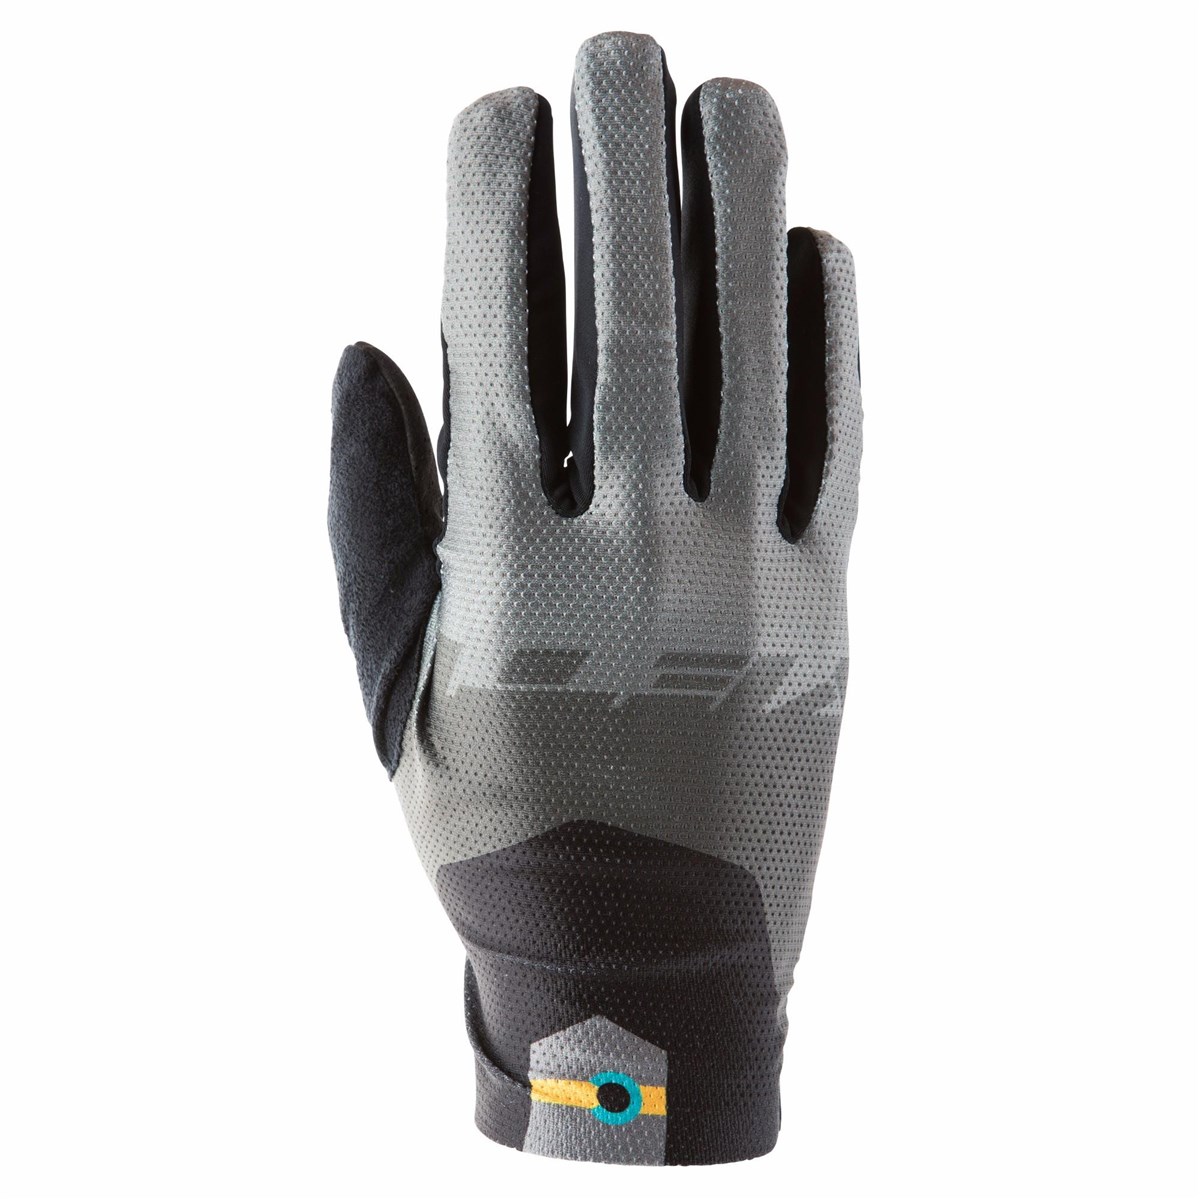 Yeti Enduro Long Finger Gloves product image